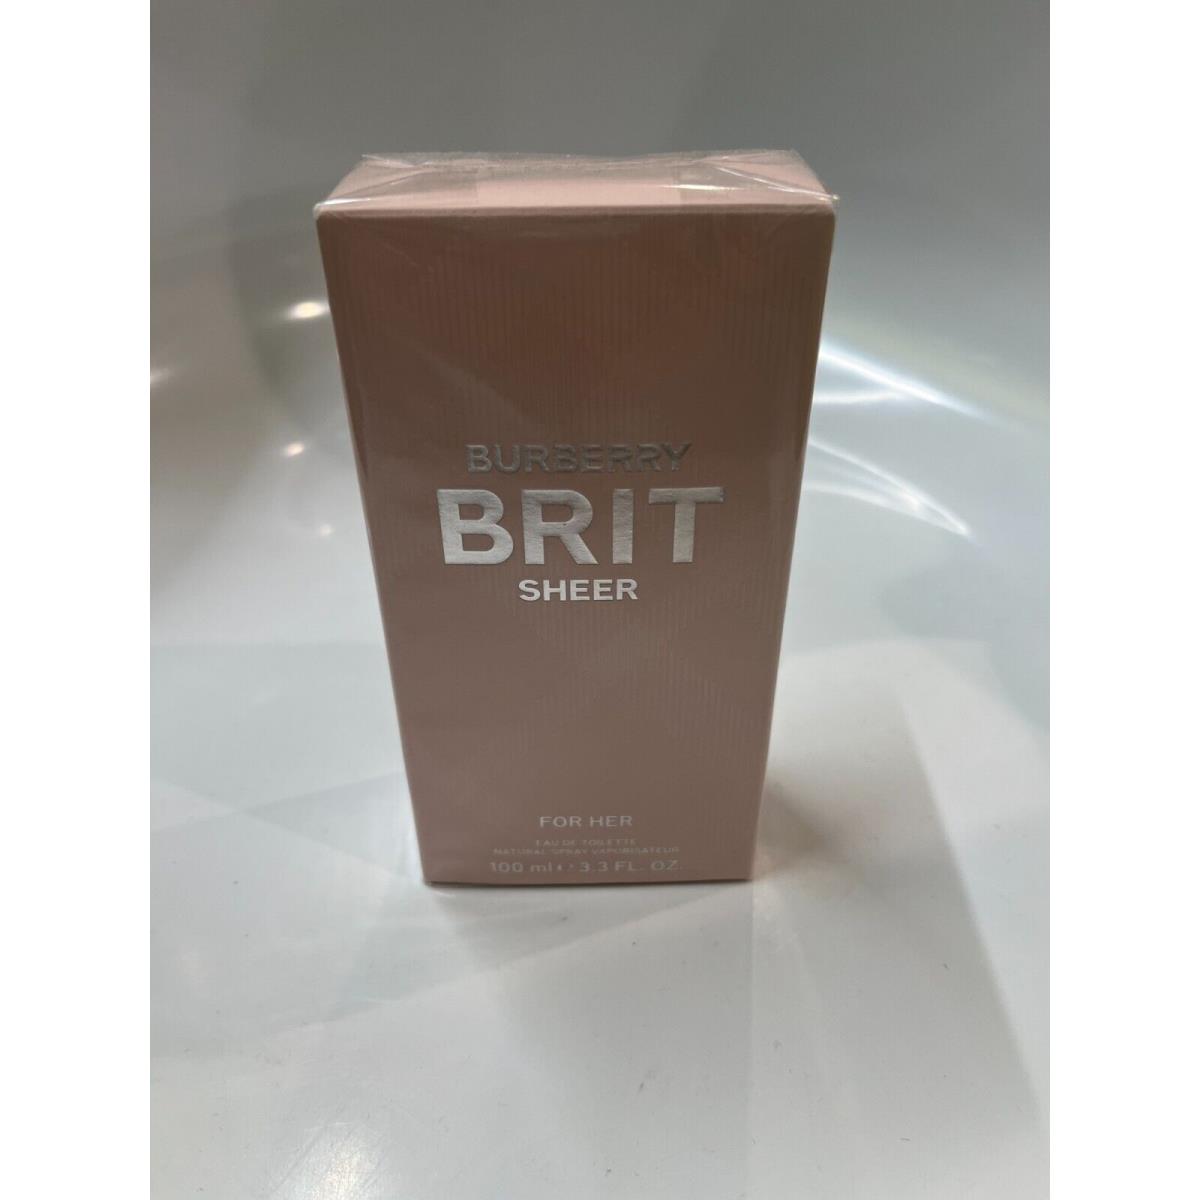 Parfum Women Burberry Brit Cheer Eau DE Toilette 100 Ml. / 3.3 Fl. OZ